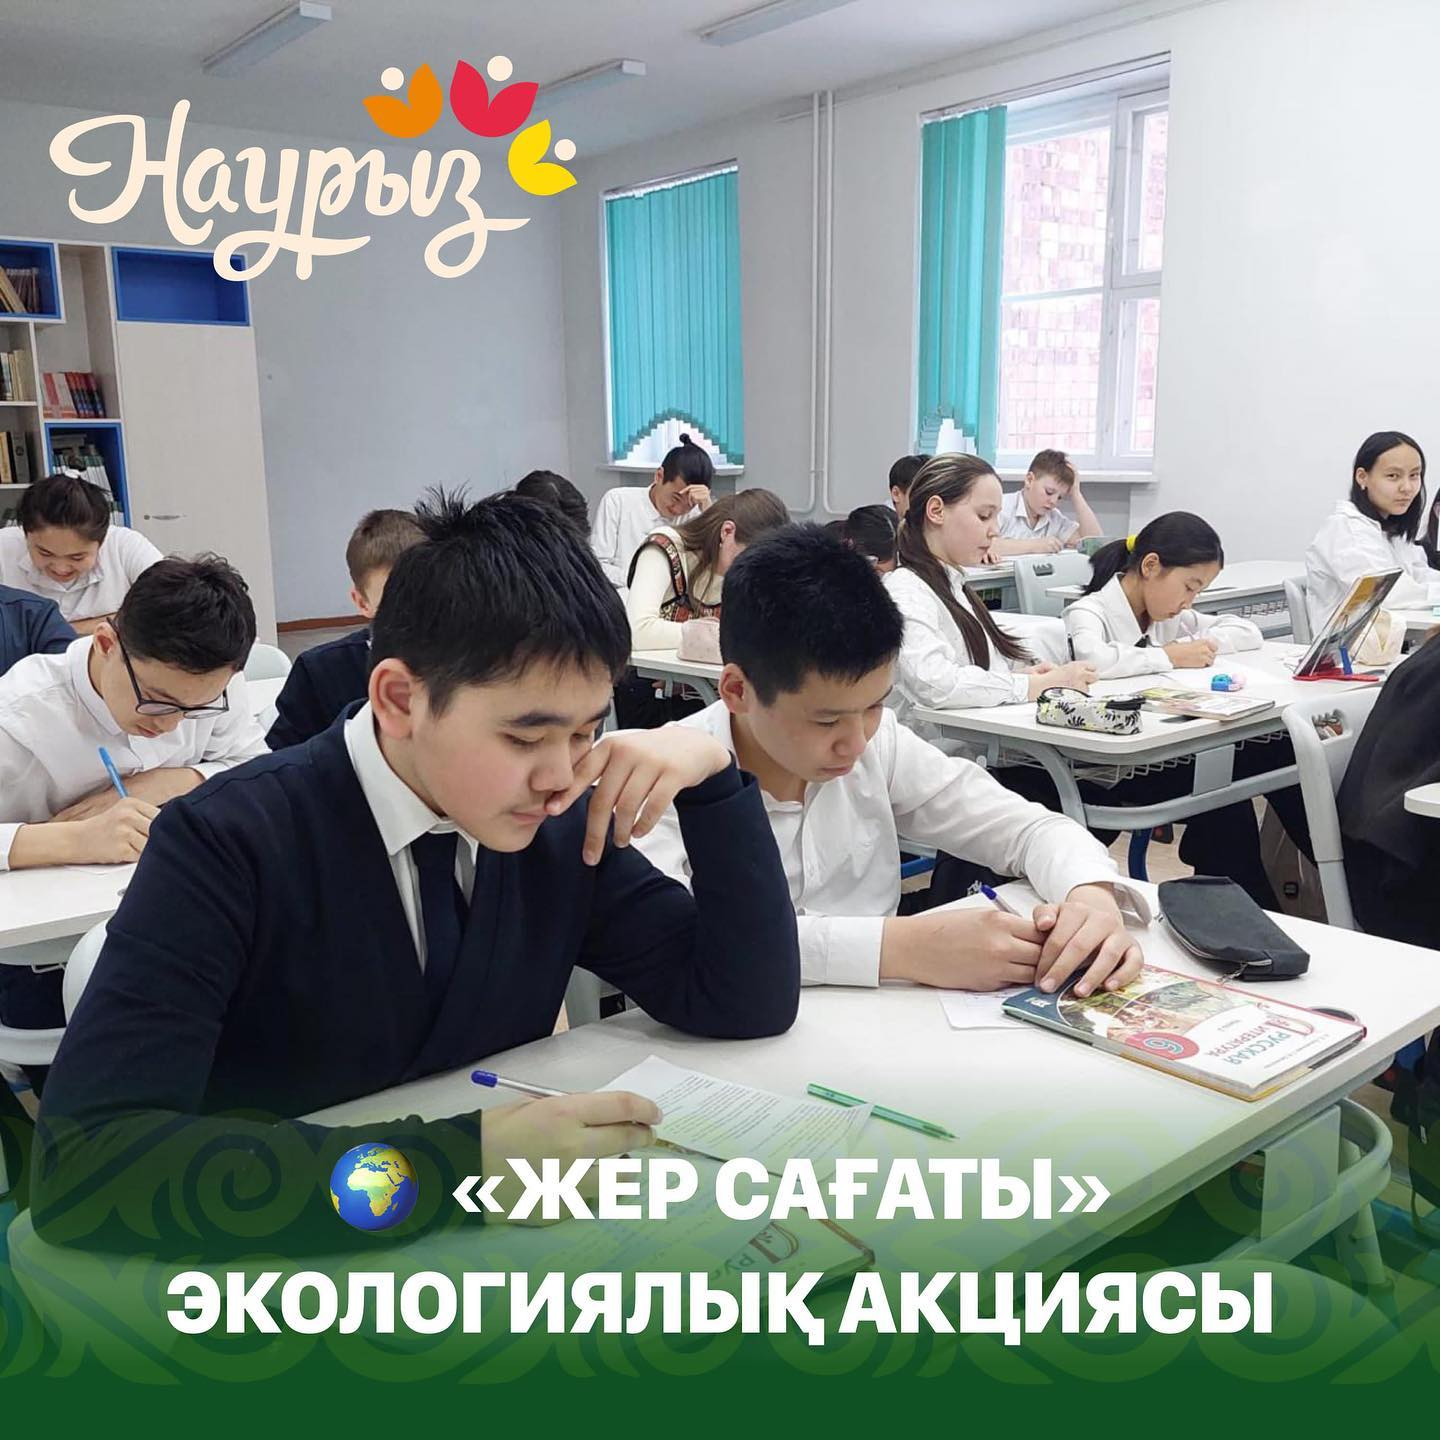 Сегодня во всех регионах Казахстана в рамках ежегодной международной акции прошла экологическая акция «Час Земли». Участниками акции являются Амбассадоры Земли - представители школьных парламентов, эко-активисты, эксперты в сфере экологии и родительская о